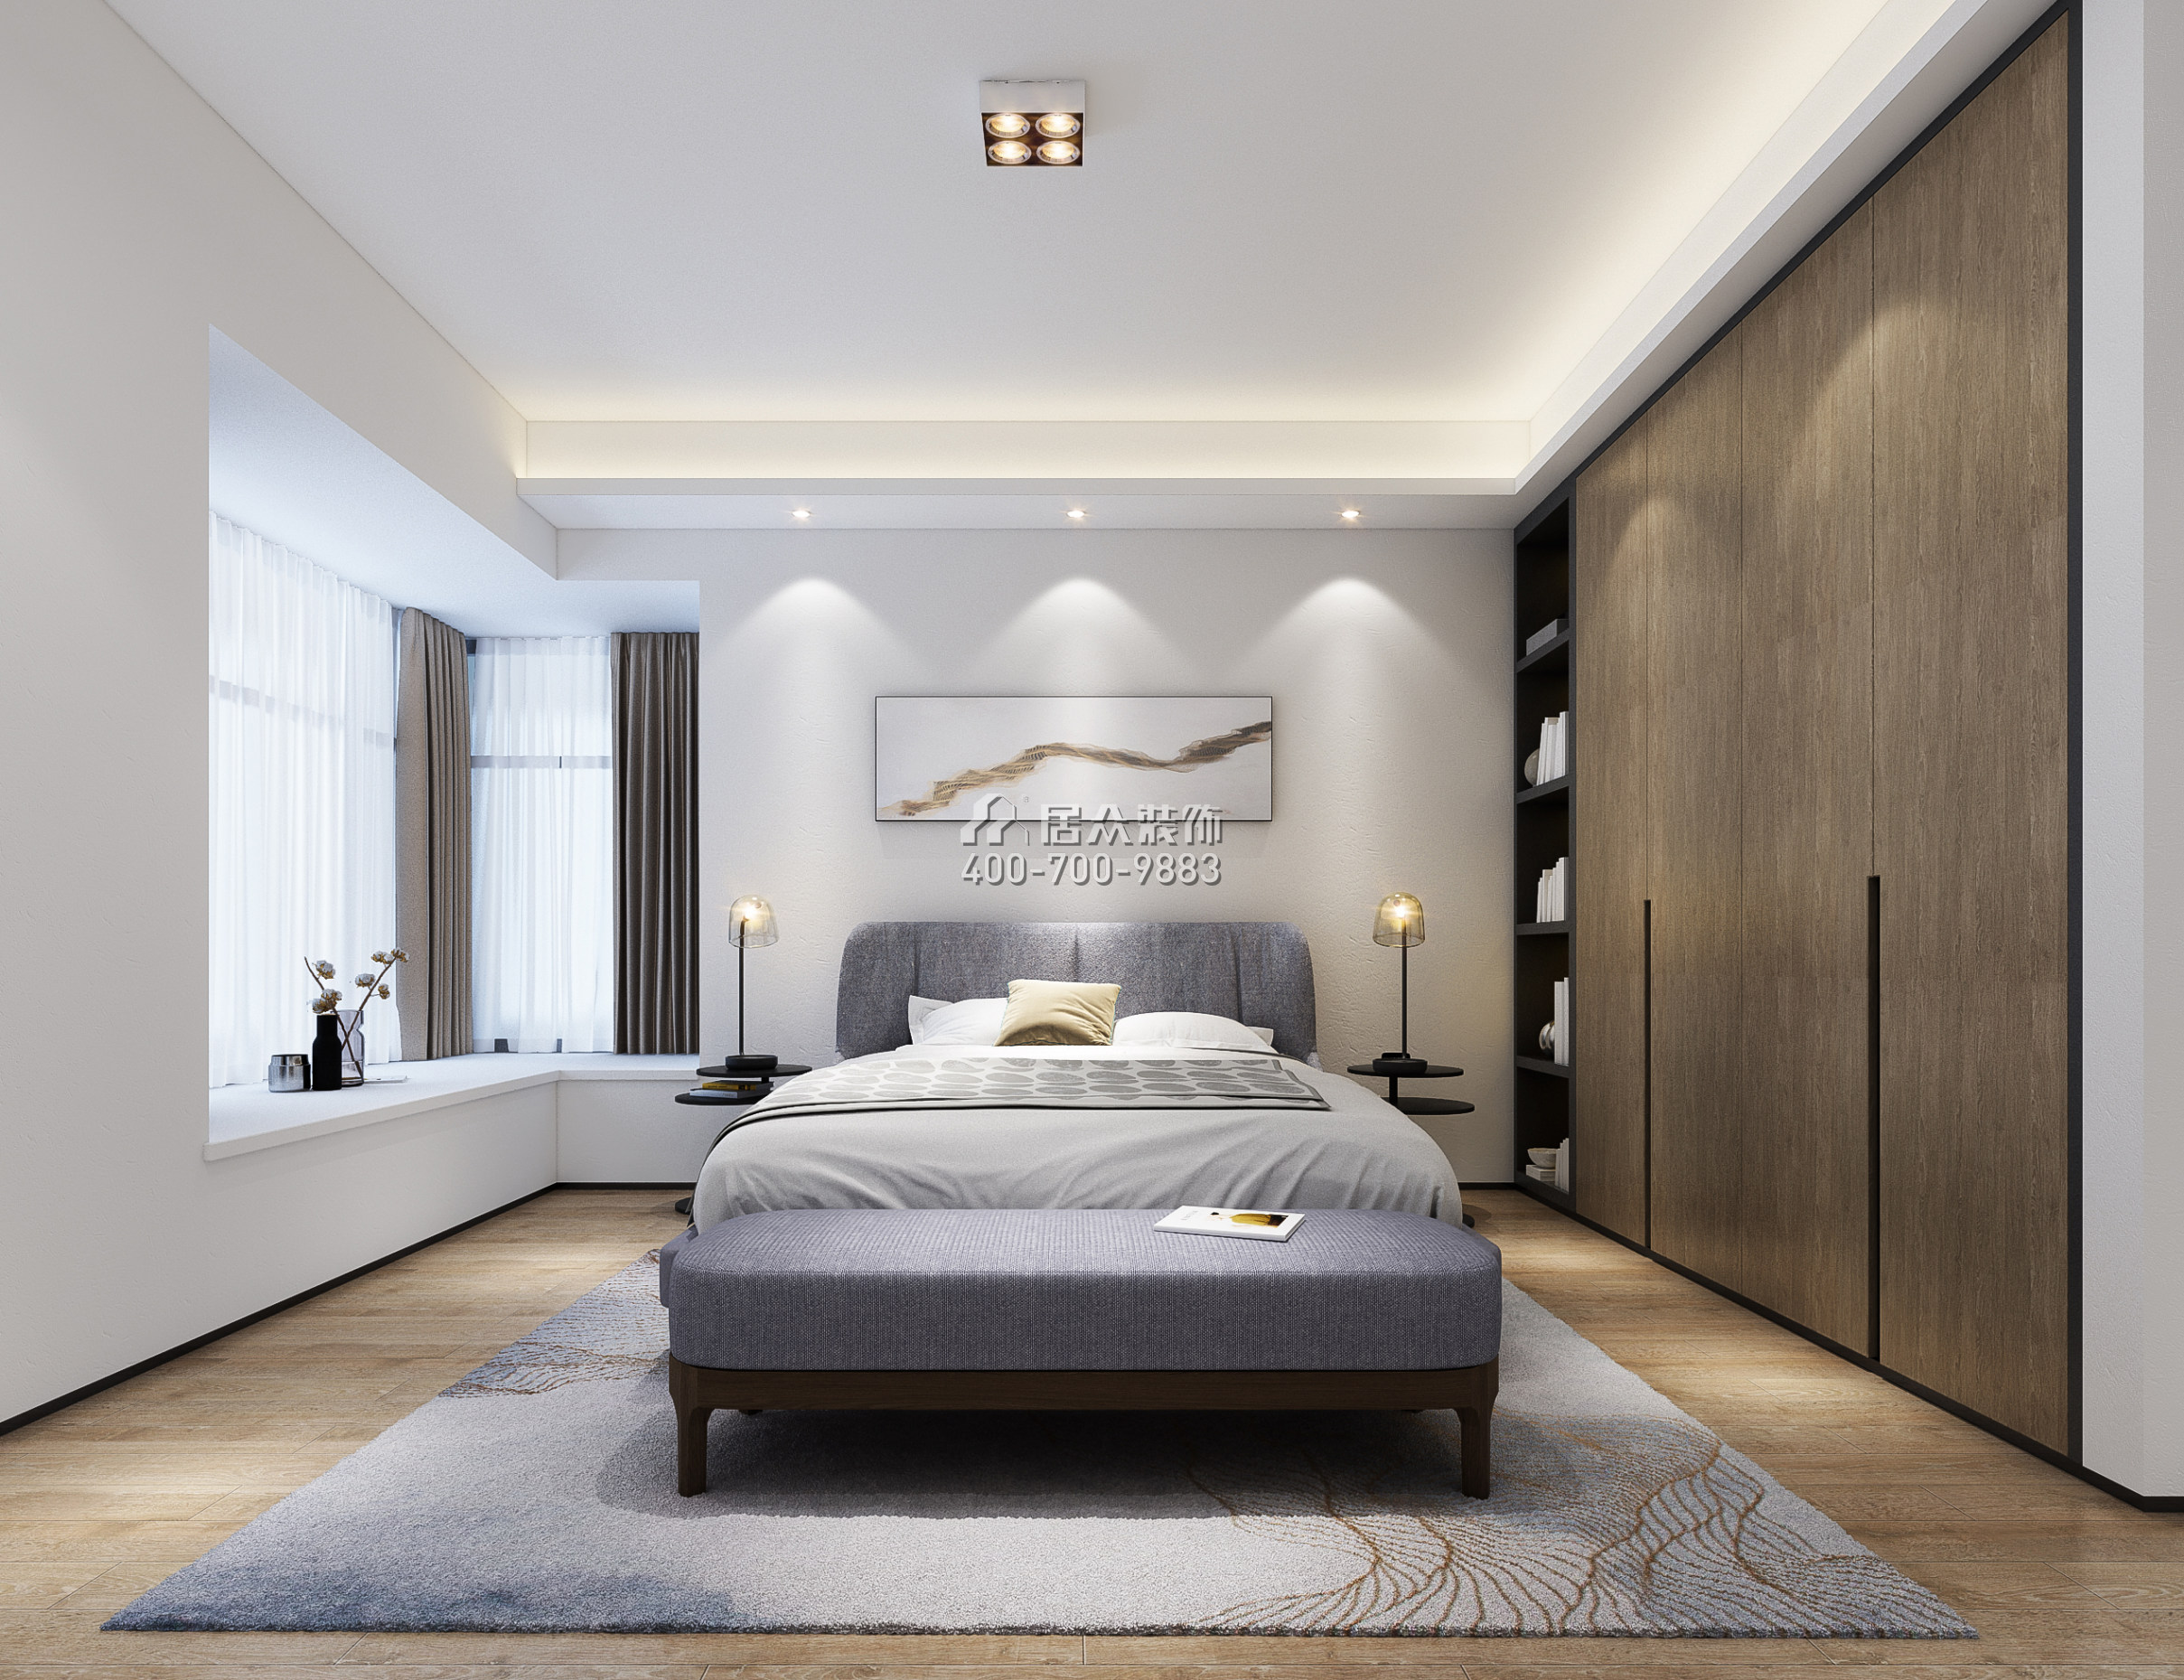 熙龙湾二期274平方米现代简约风格复式户型卧室装修效果图